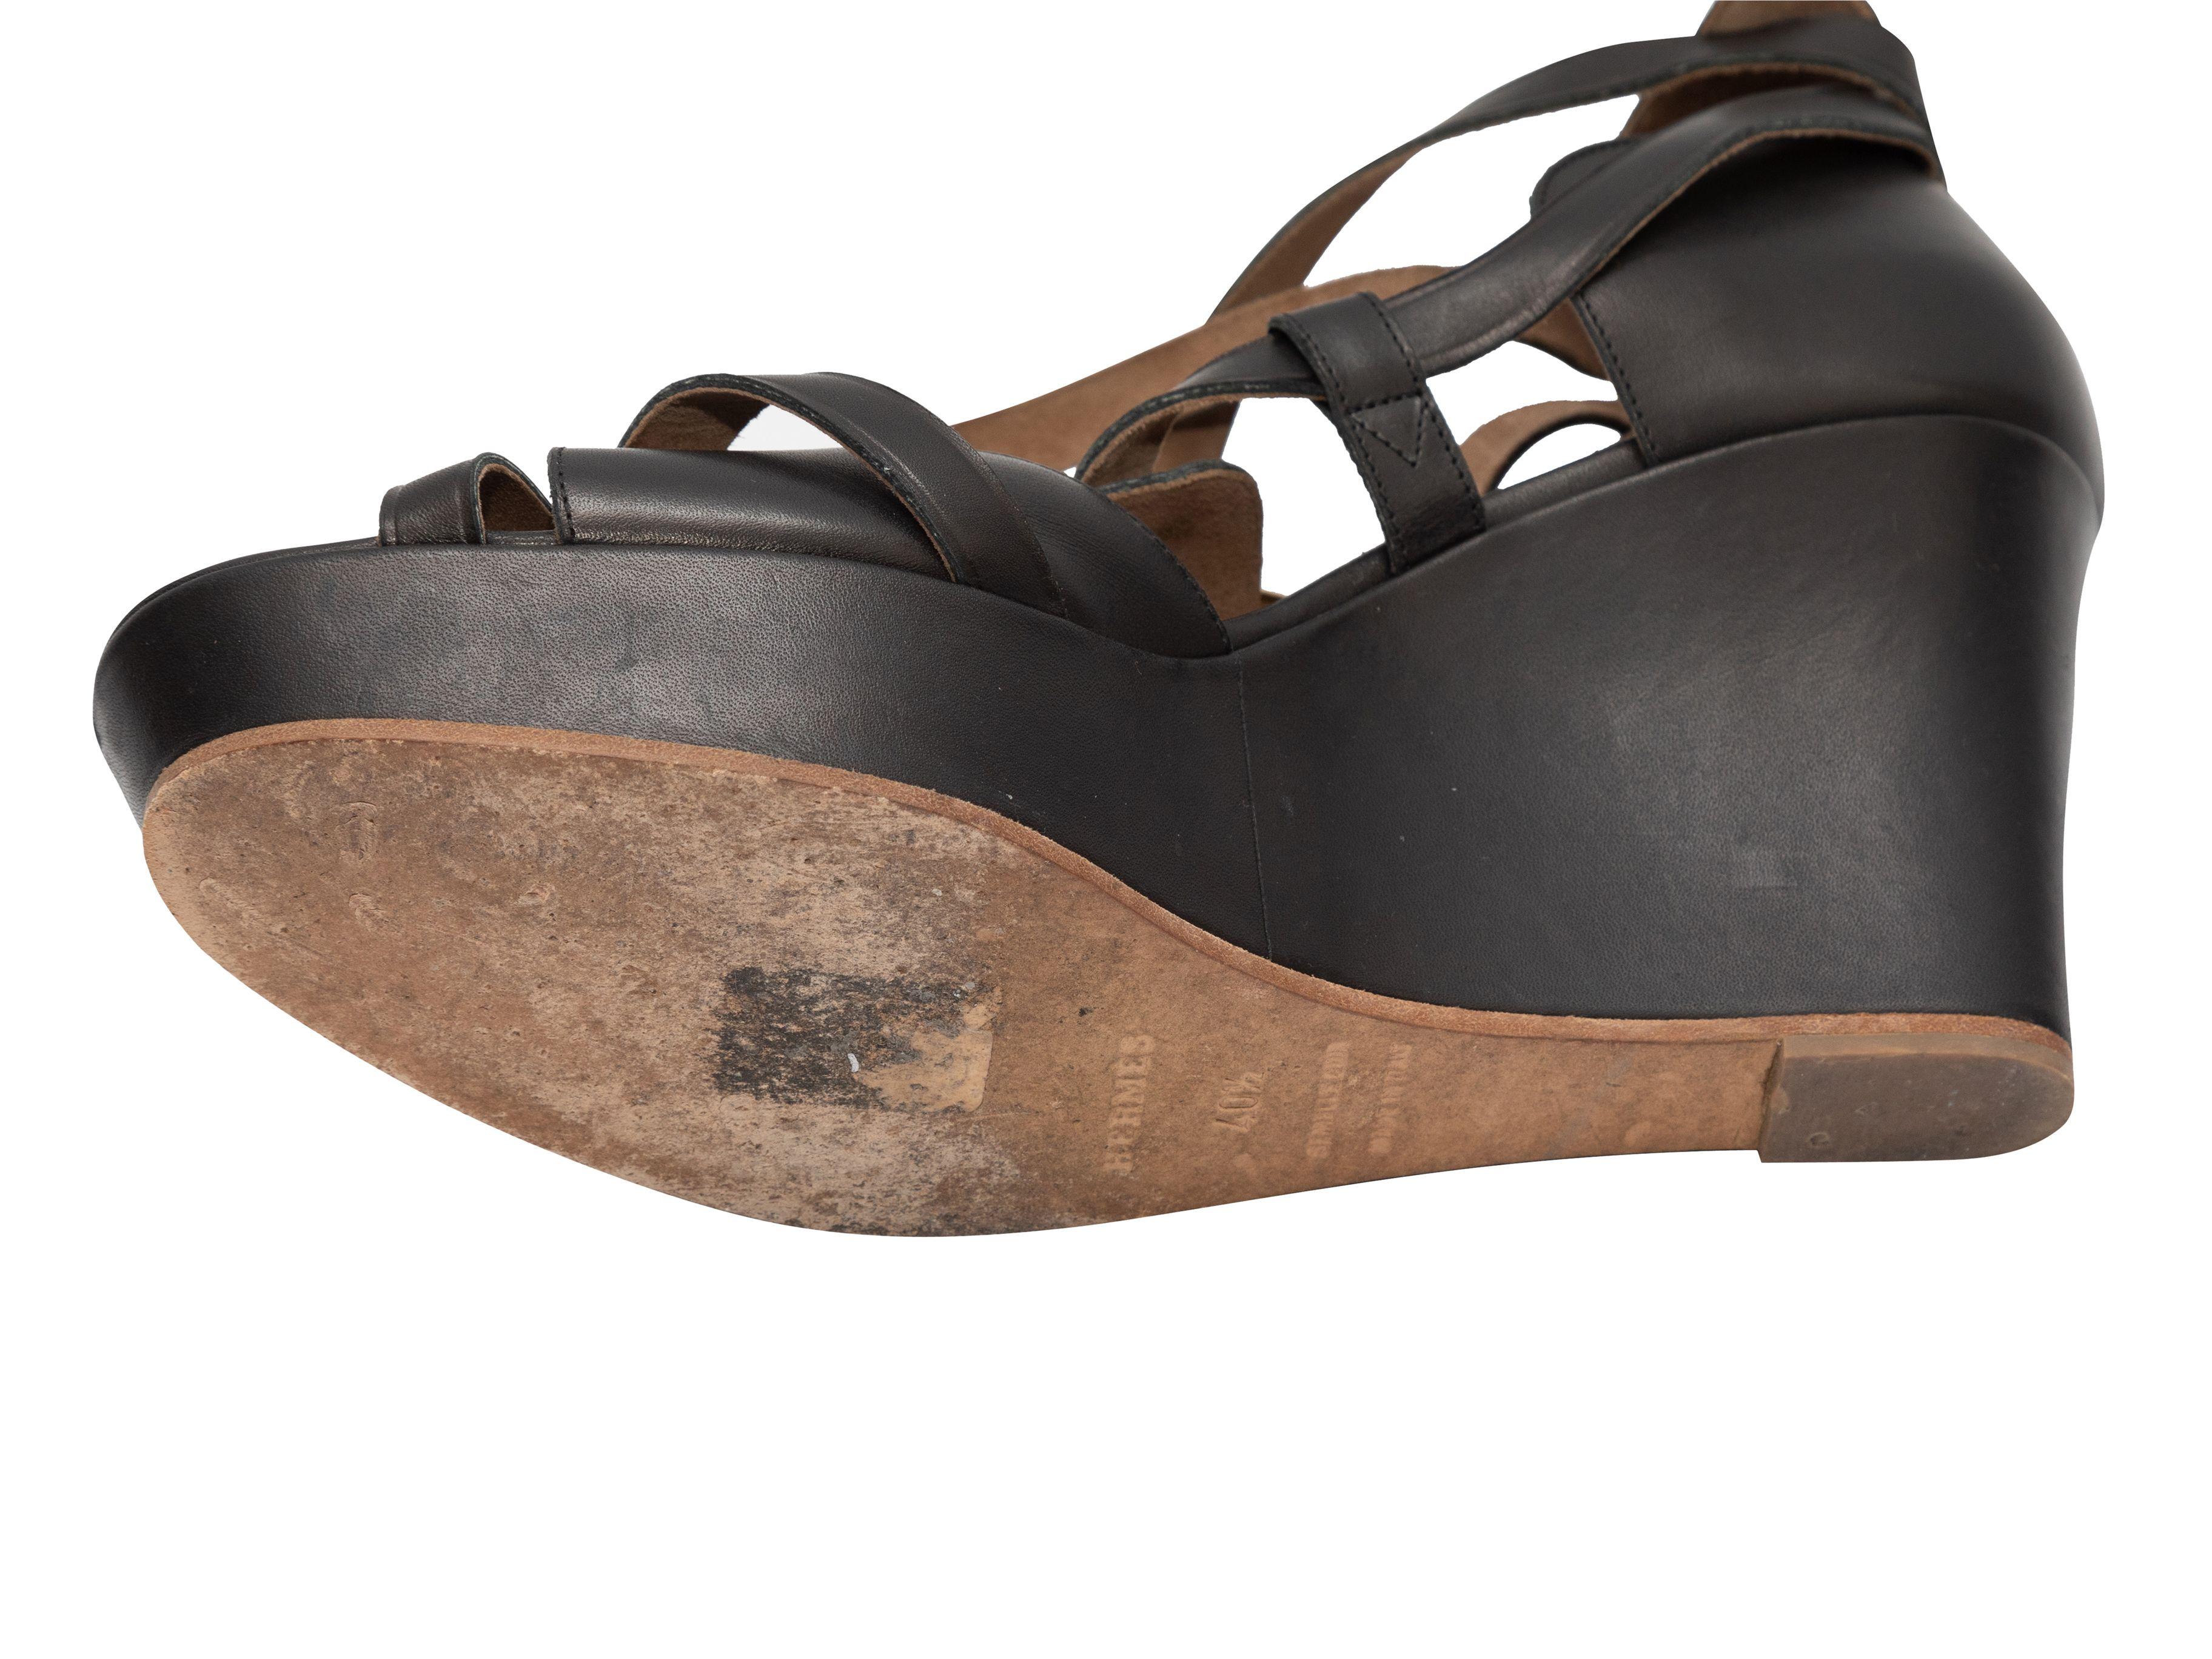 Détails du produit : Sandales compensées en cuir noir de la marque Hermès. Fermetures à boucle en métal doré au niveau de la cheville. Hauteur de la plateforme de 1,5